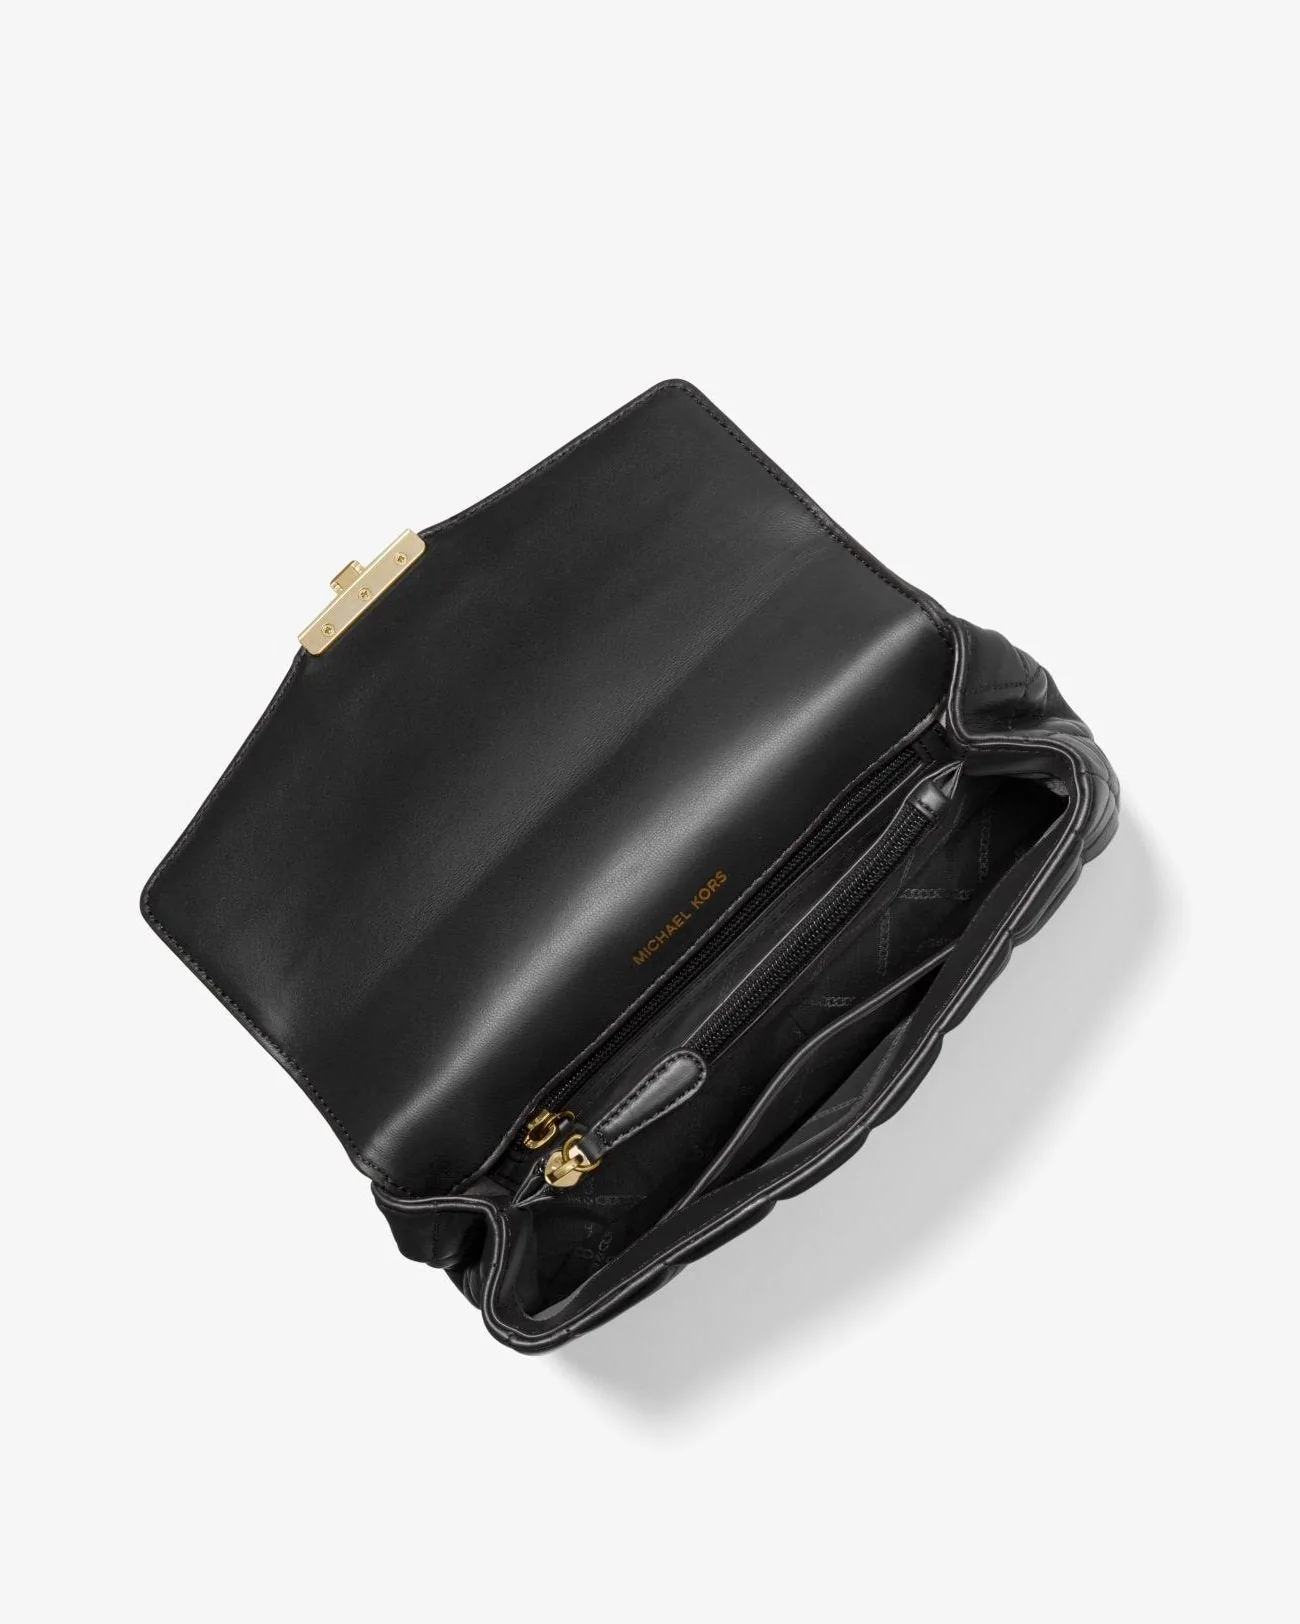 Michael Kors SoHo Large Quilted Leather Shoulder Bag, Black